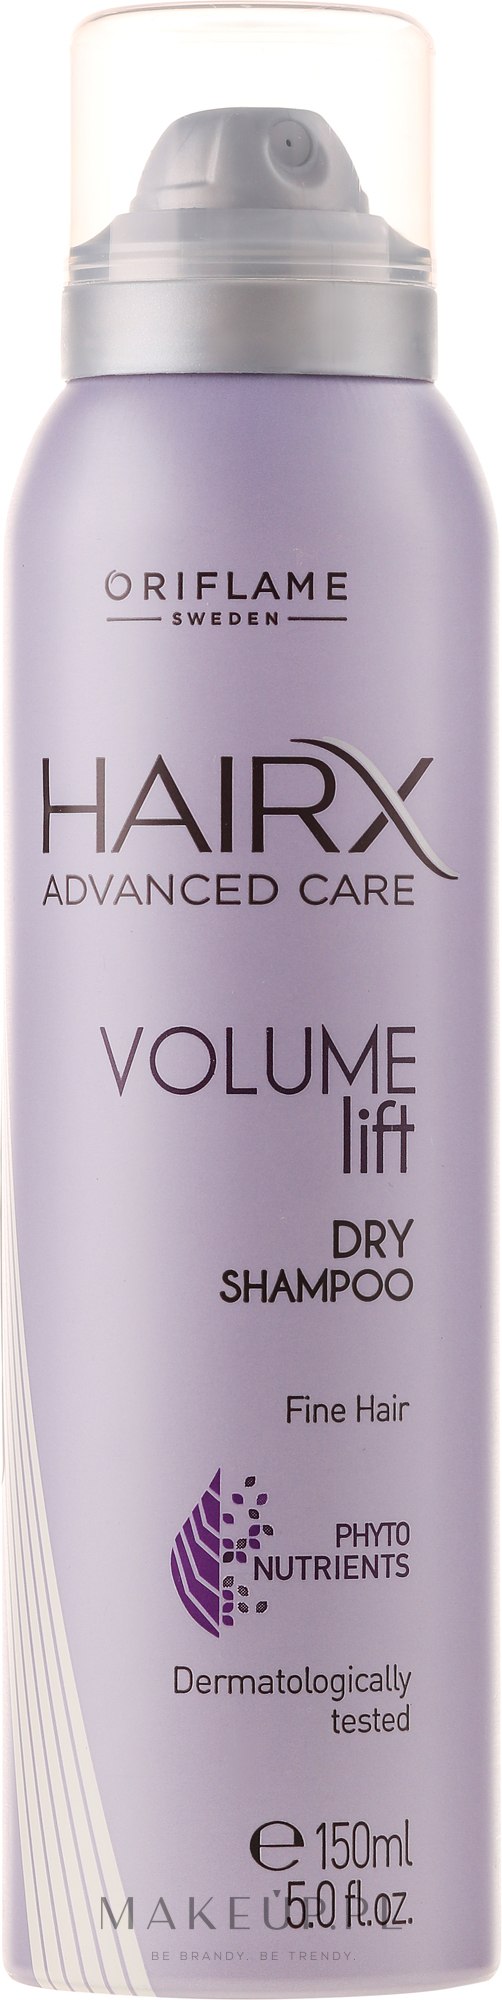 szampon hair volume lift oriflame opinie